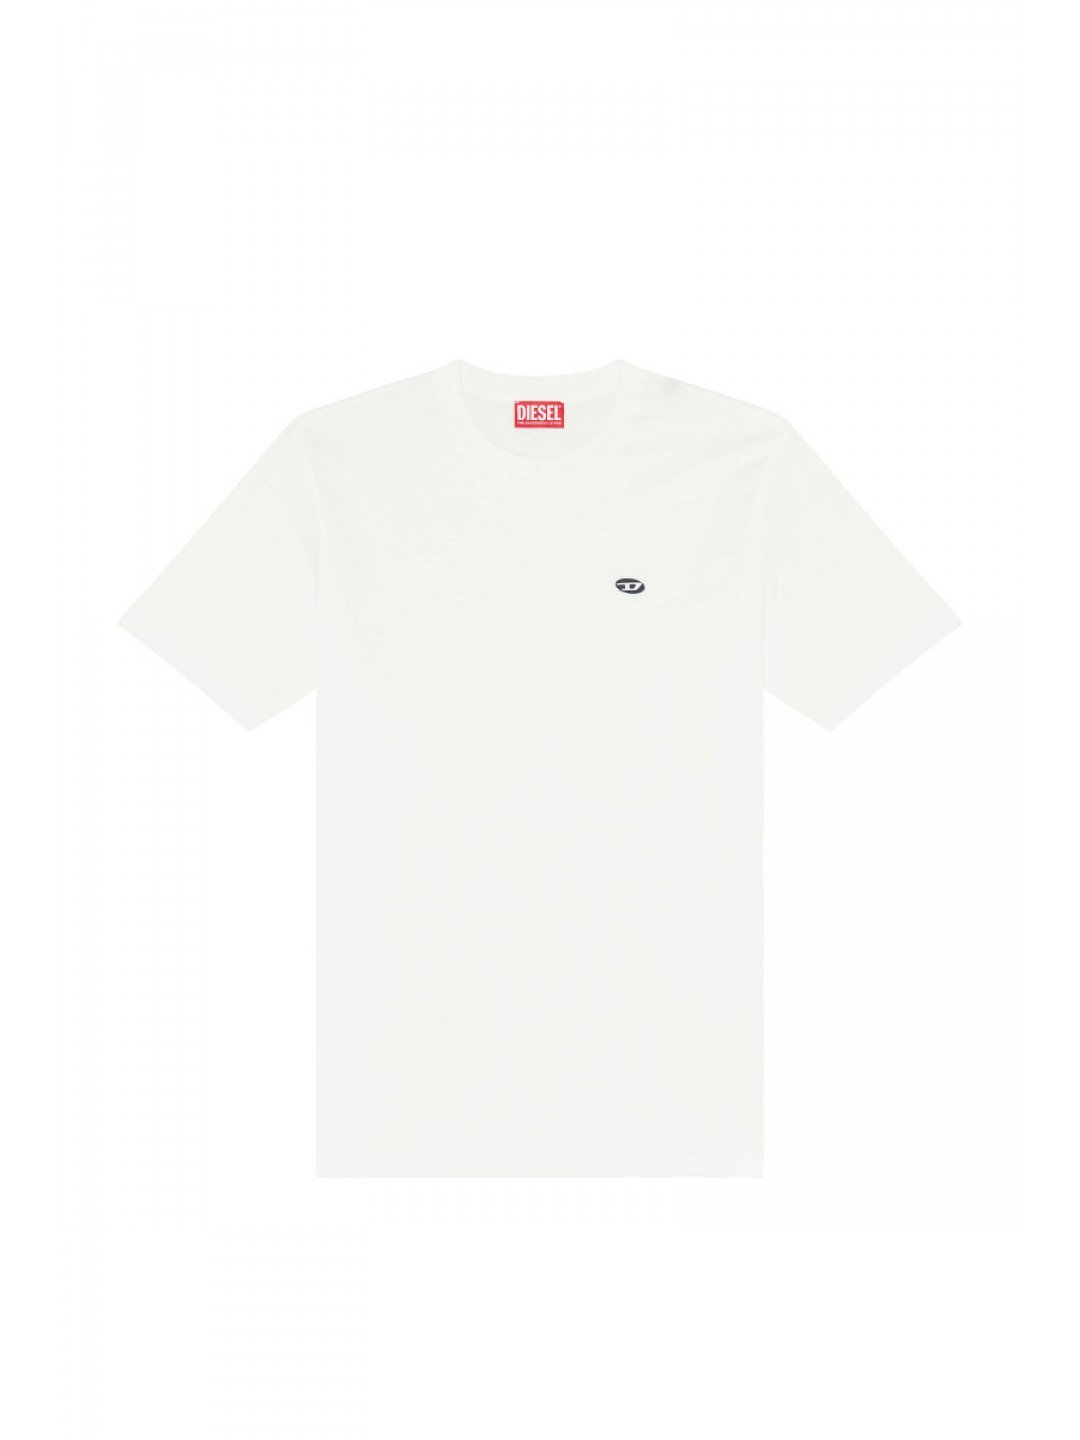 Tričko diesel t-justine-doval-pj t-shirt bílá xl